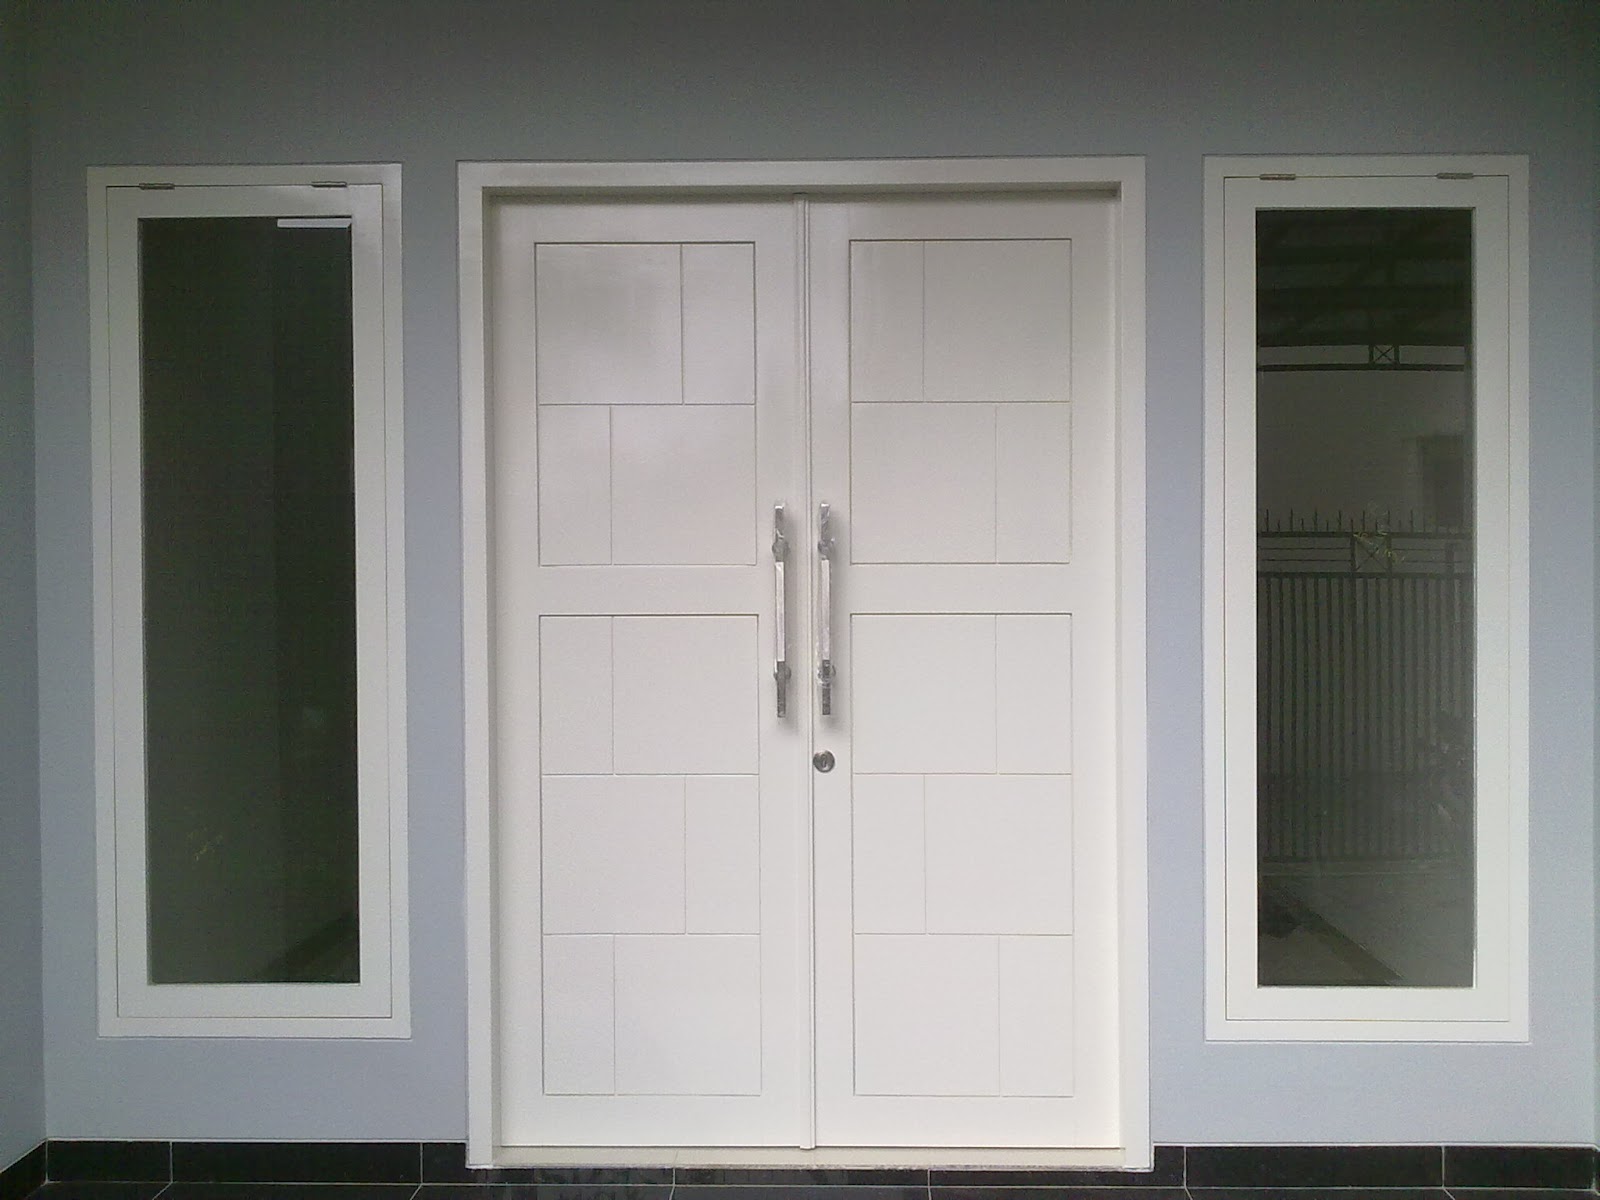 Kumpulan Gambar Model Pintu Minimalis Buka Dua Terbaru Gloobest